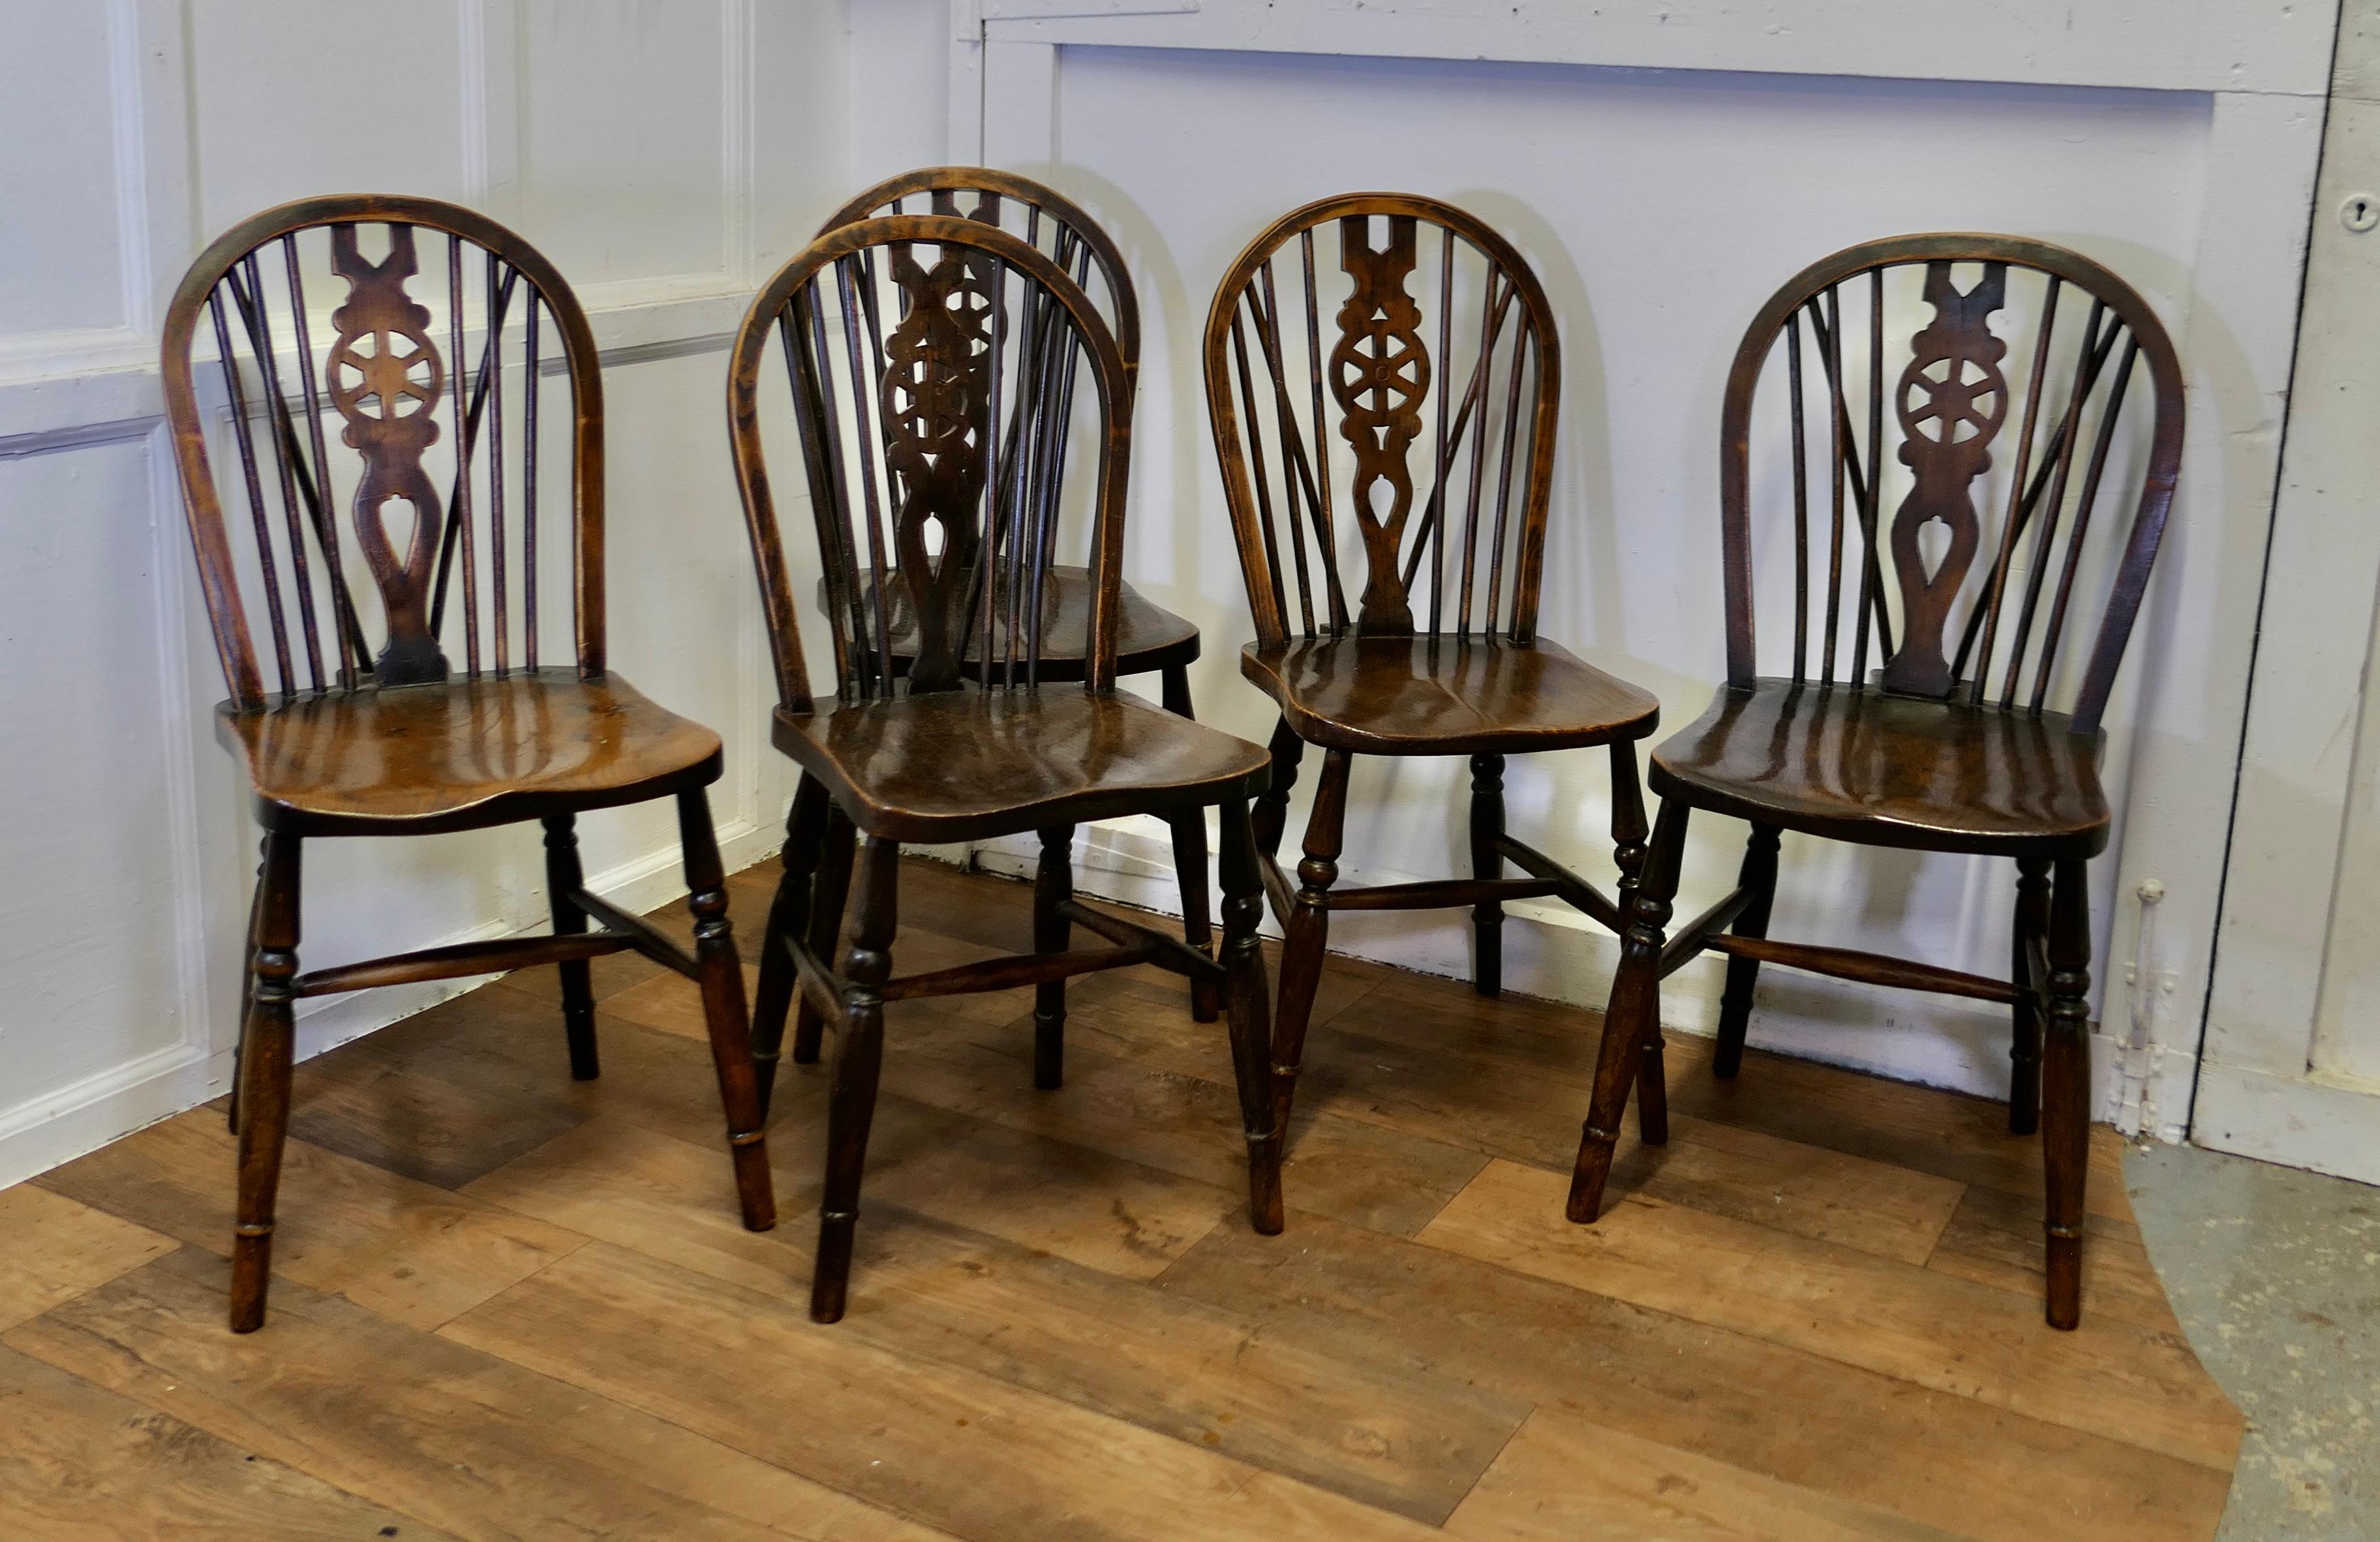 Satz von 5 viktorianischen Buche & Ulme Rad zurück Windsor Küche Esszimmerstühle

Die Stühle sind ein klassisches Design und traditionell aus Massivholz gefertigt. Sie haben eine gebogene Rückenlehne mit einem Keil im traditionellen Windsor-Stil,